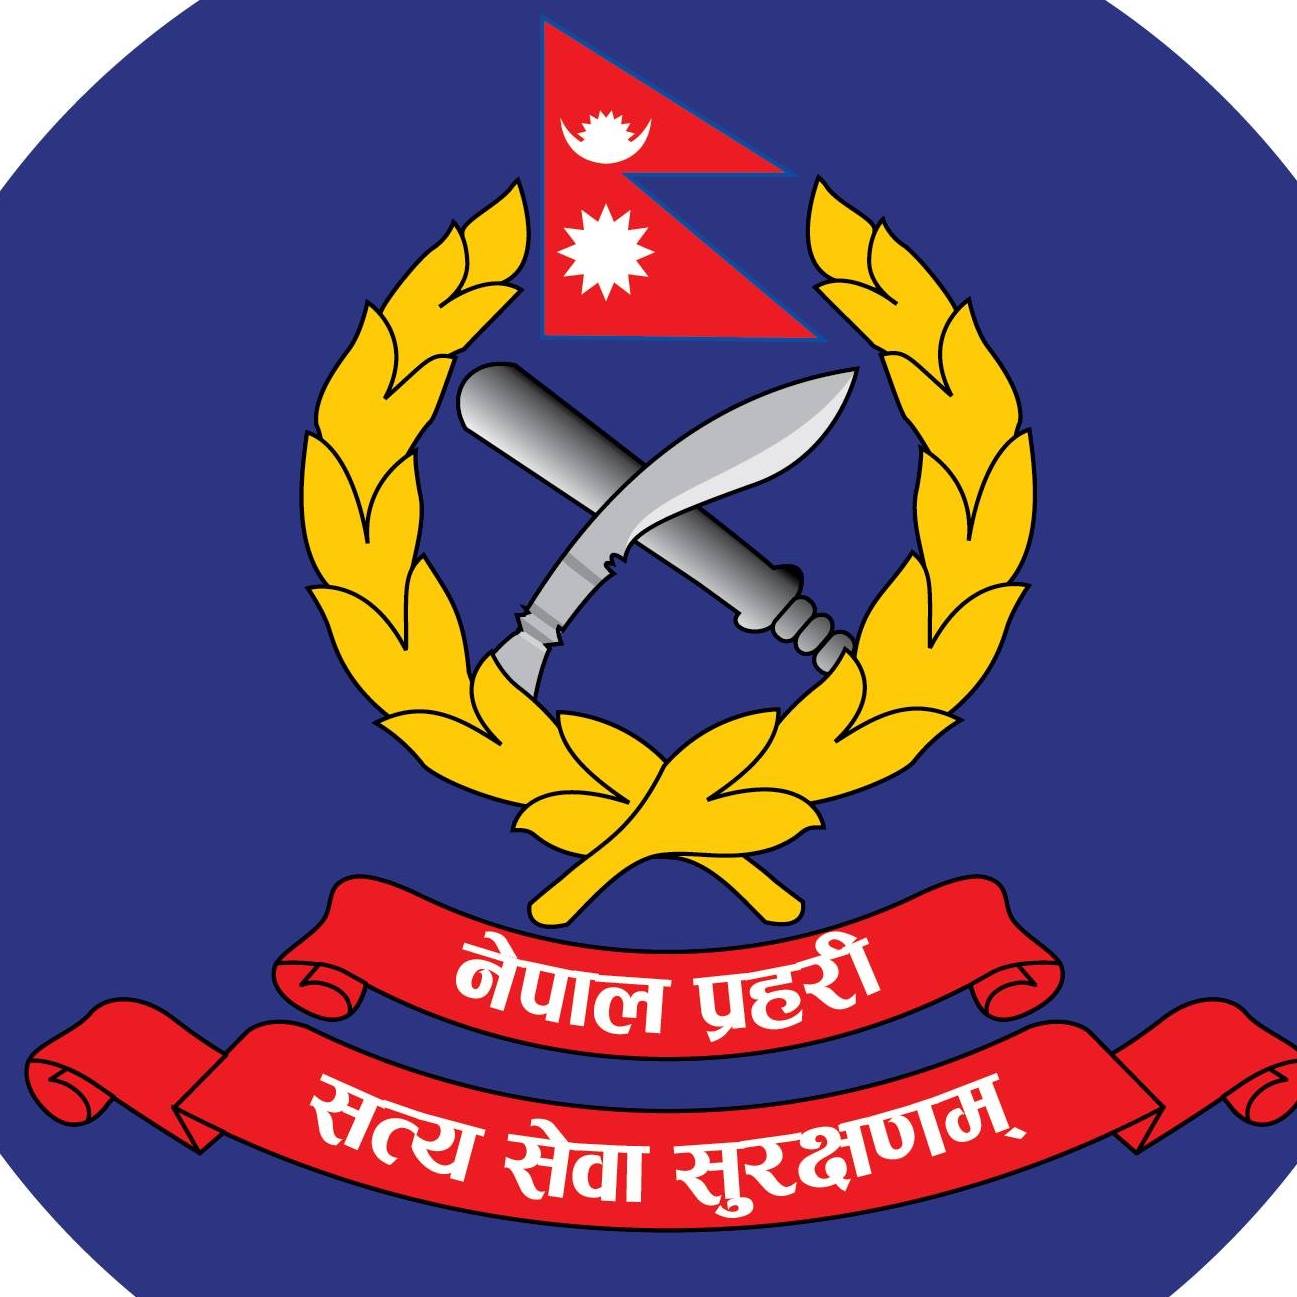 काठमाडौंमा चाडपर्व सुरक्षा योजना सार्वजनिक, ३ हजार ३४३ सुरक्षाकर्मी खटाइने